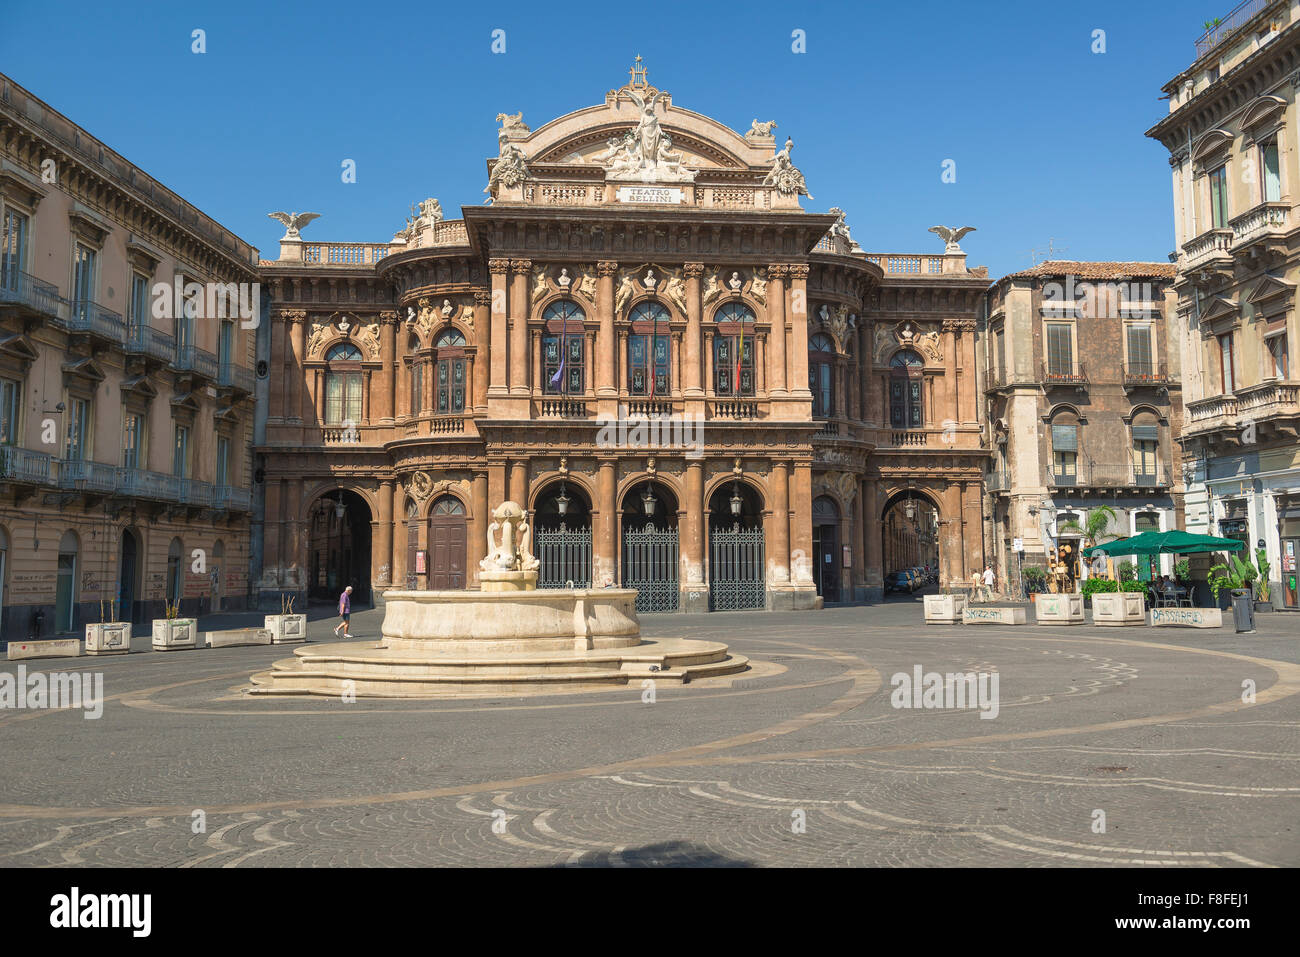 Piazza Bellini, vue sur l'opéra historique de Catane - le Teatro Bellini - avec la Piazza Bellini en premier plan, Catane, Sicile. Banque D'Images